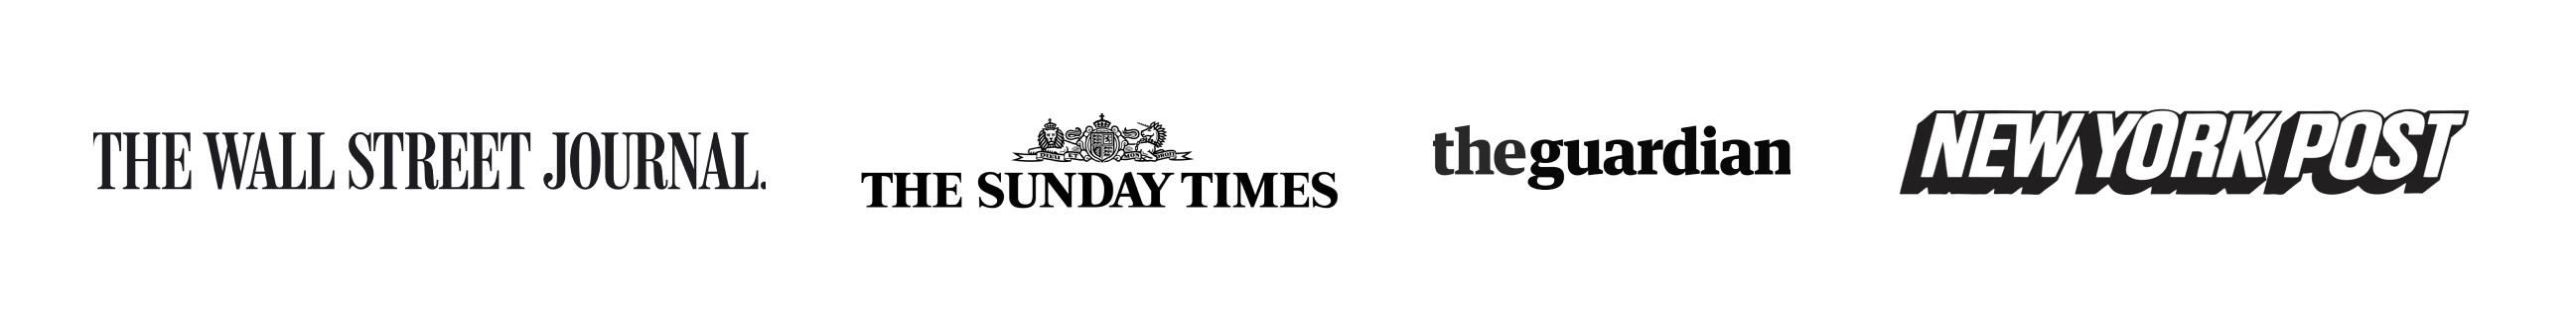 Logo Klanten Audiotype Journalist Mediabedrijf Krant